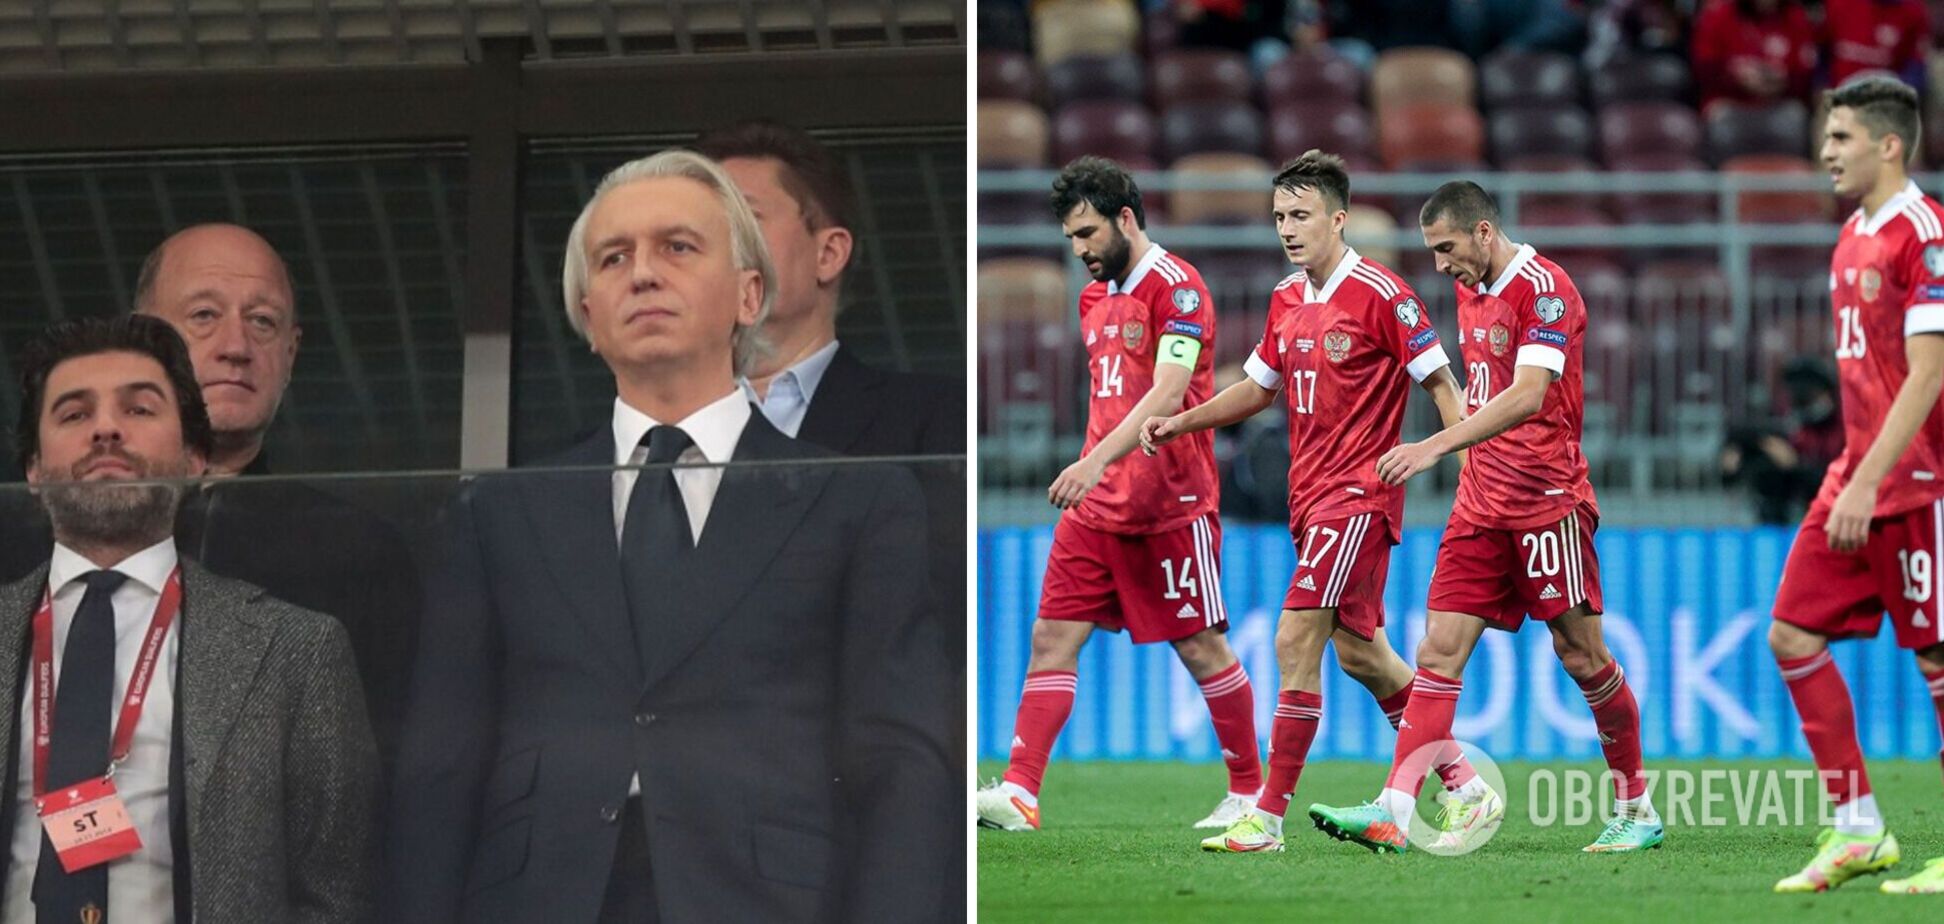 'Не было консультаций': в России удивились отстранению от мирового футбола, наехав на ФИФА